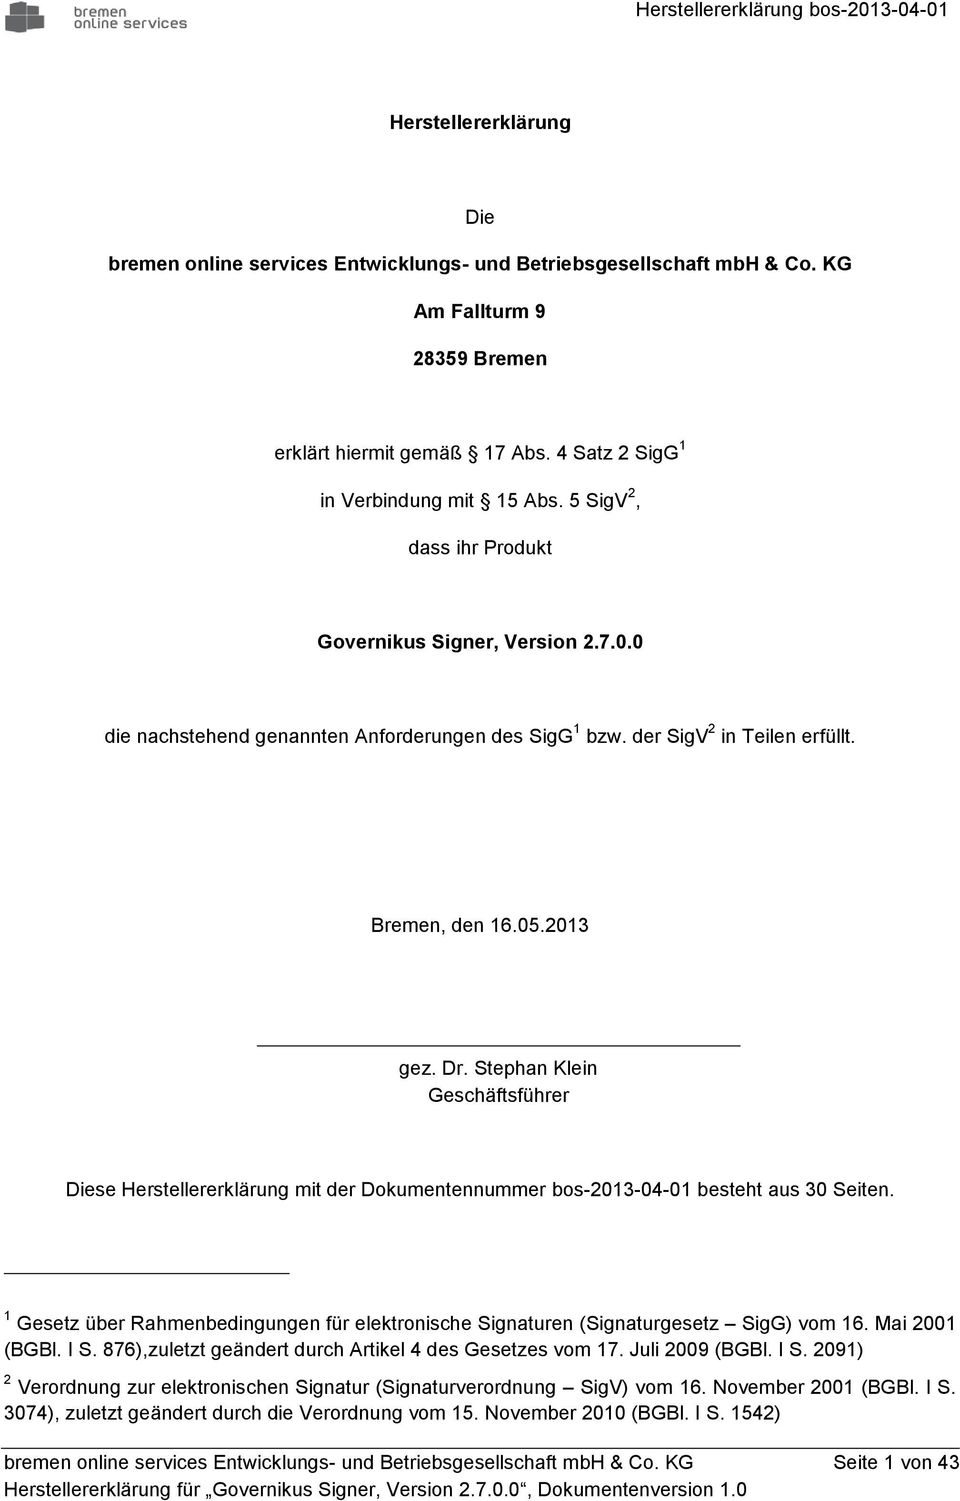 Bremen, den 16.05.2013 gez. Dr. Stephan Klein Geschäftsführer Diese Herstellererklärung mit der Dkumentennummer bs-2013-04-01 besteht aus 30 Seiten.